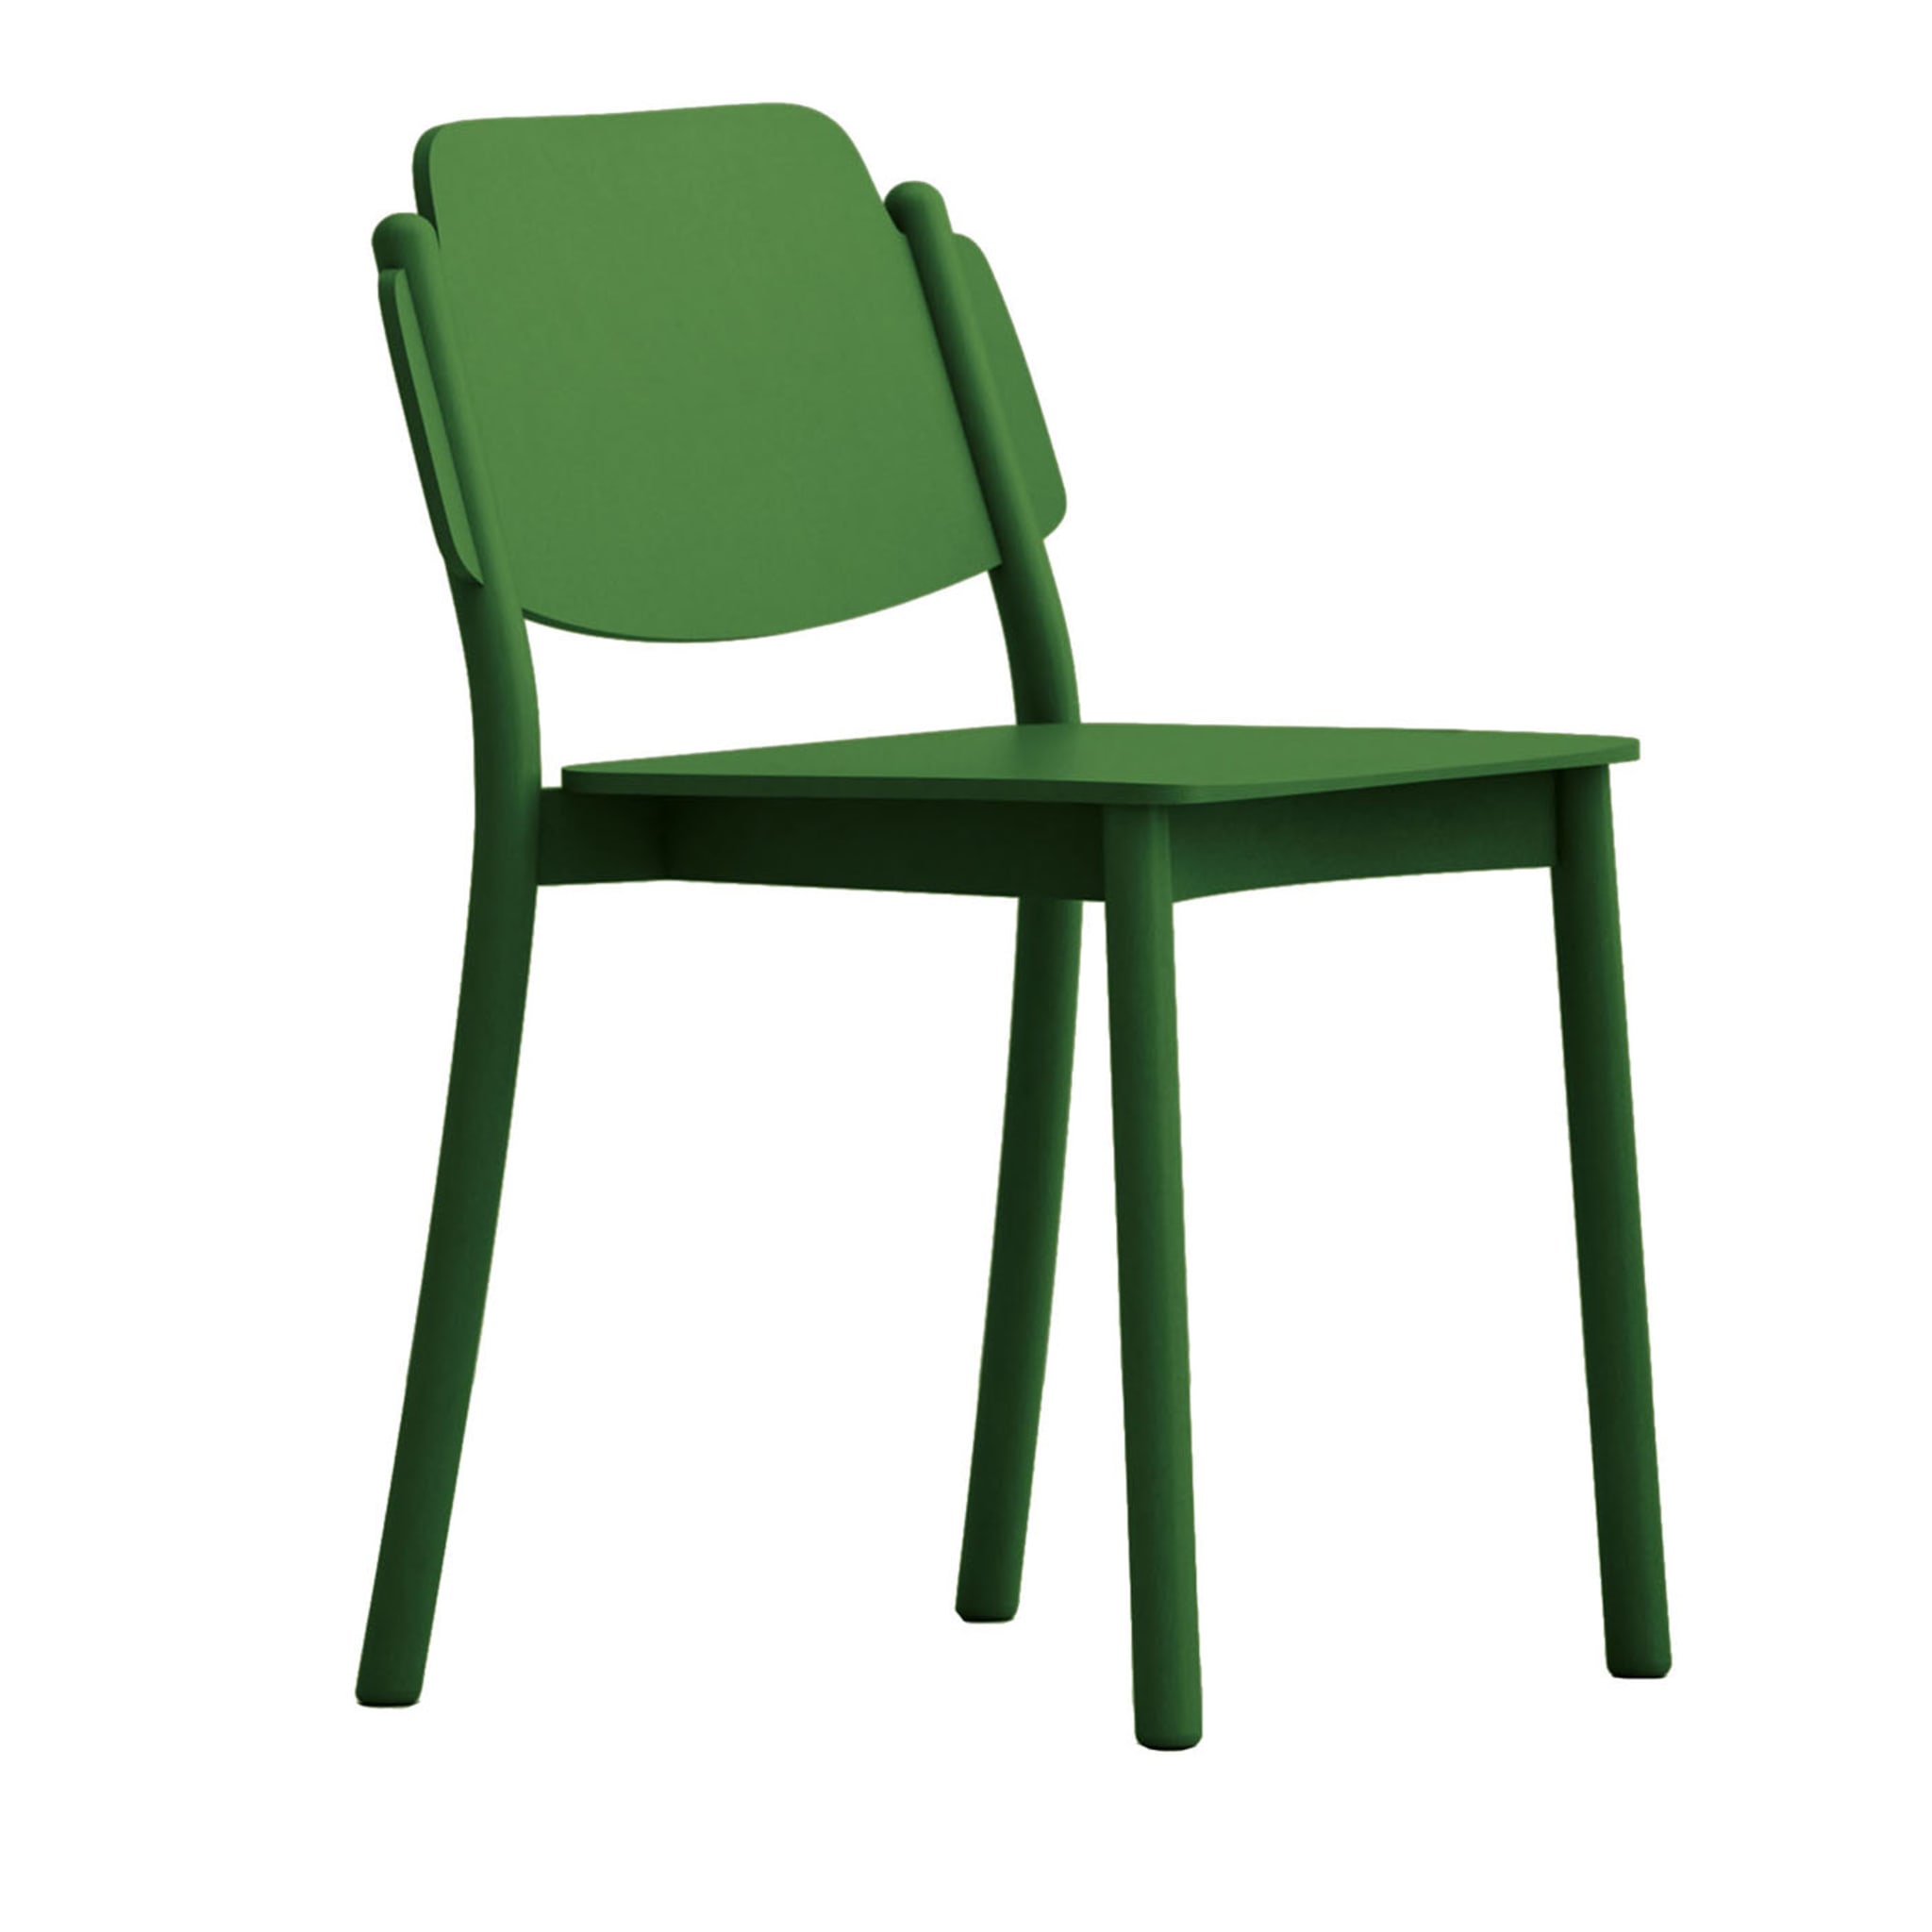 My Chair Green Chair by Emilio Nanni - Main view